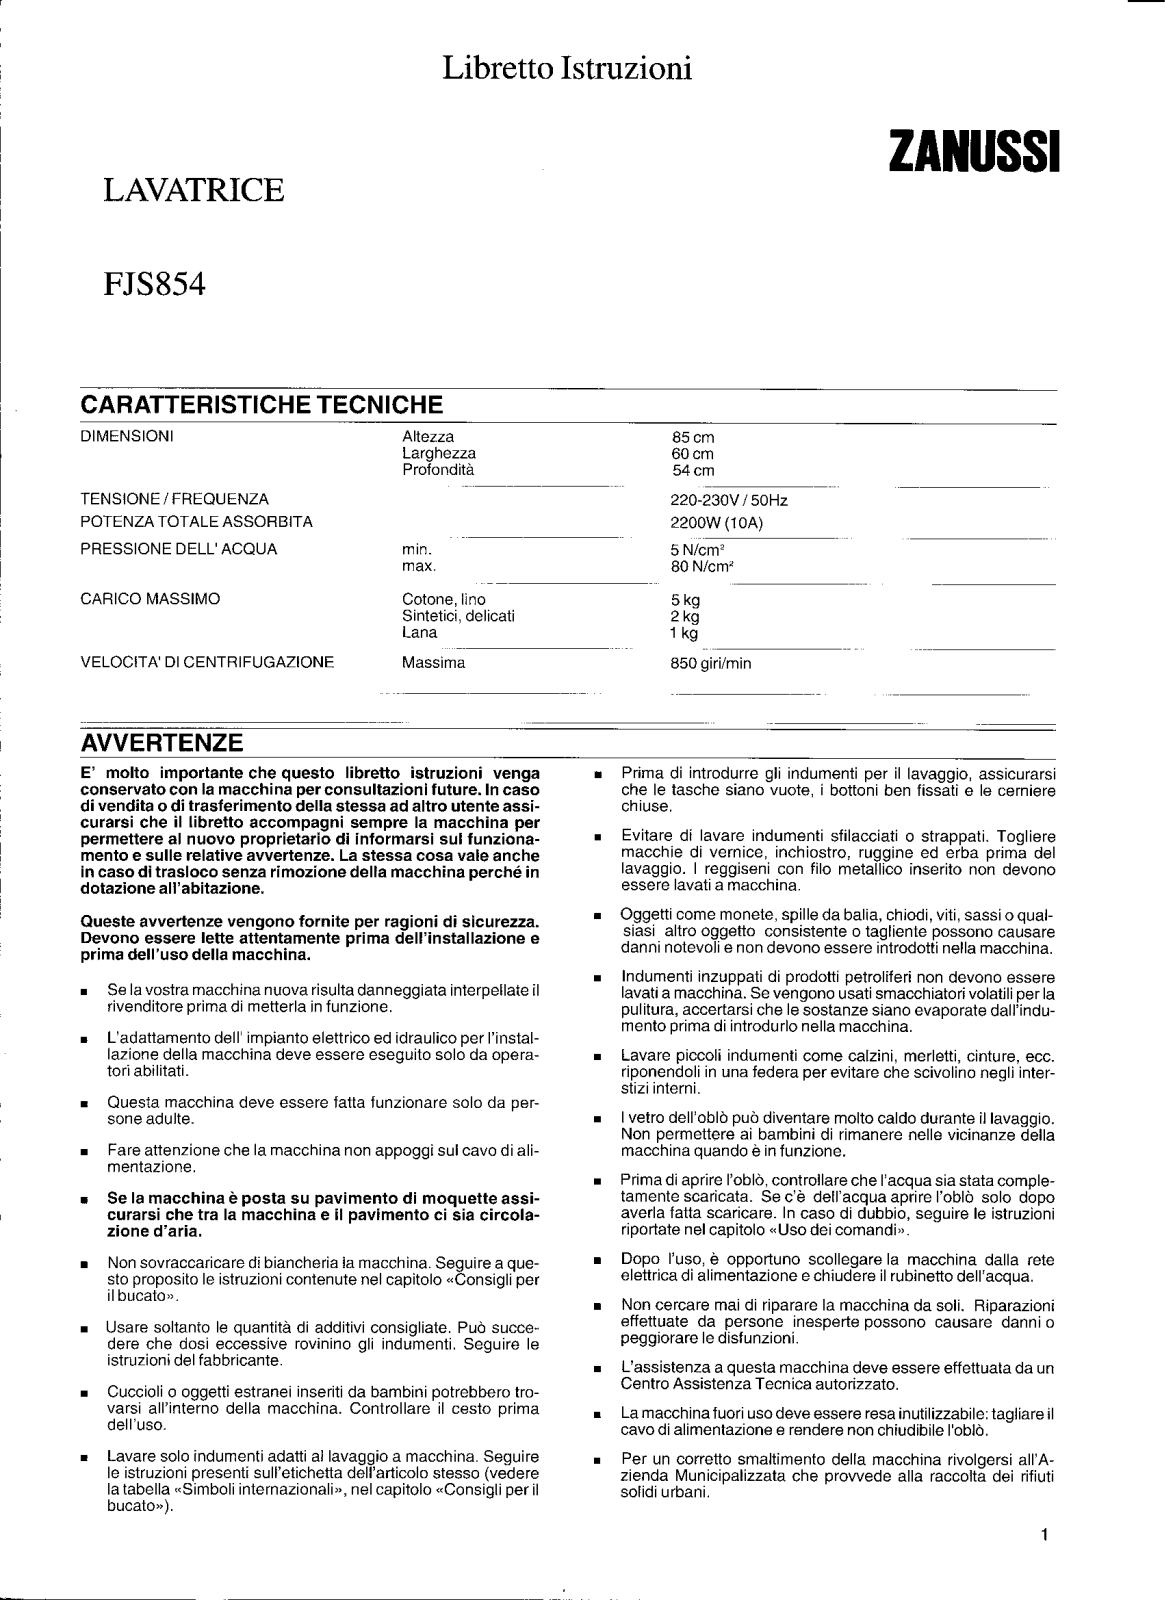 Zanussi FJS854 User Manual